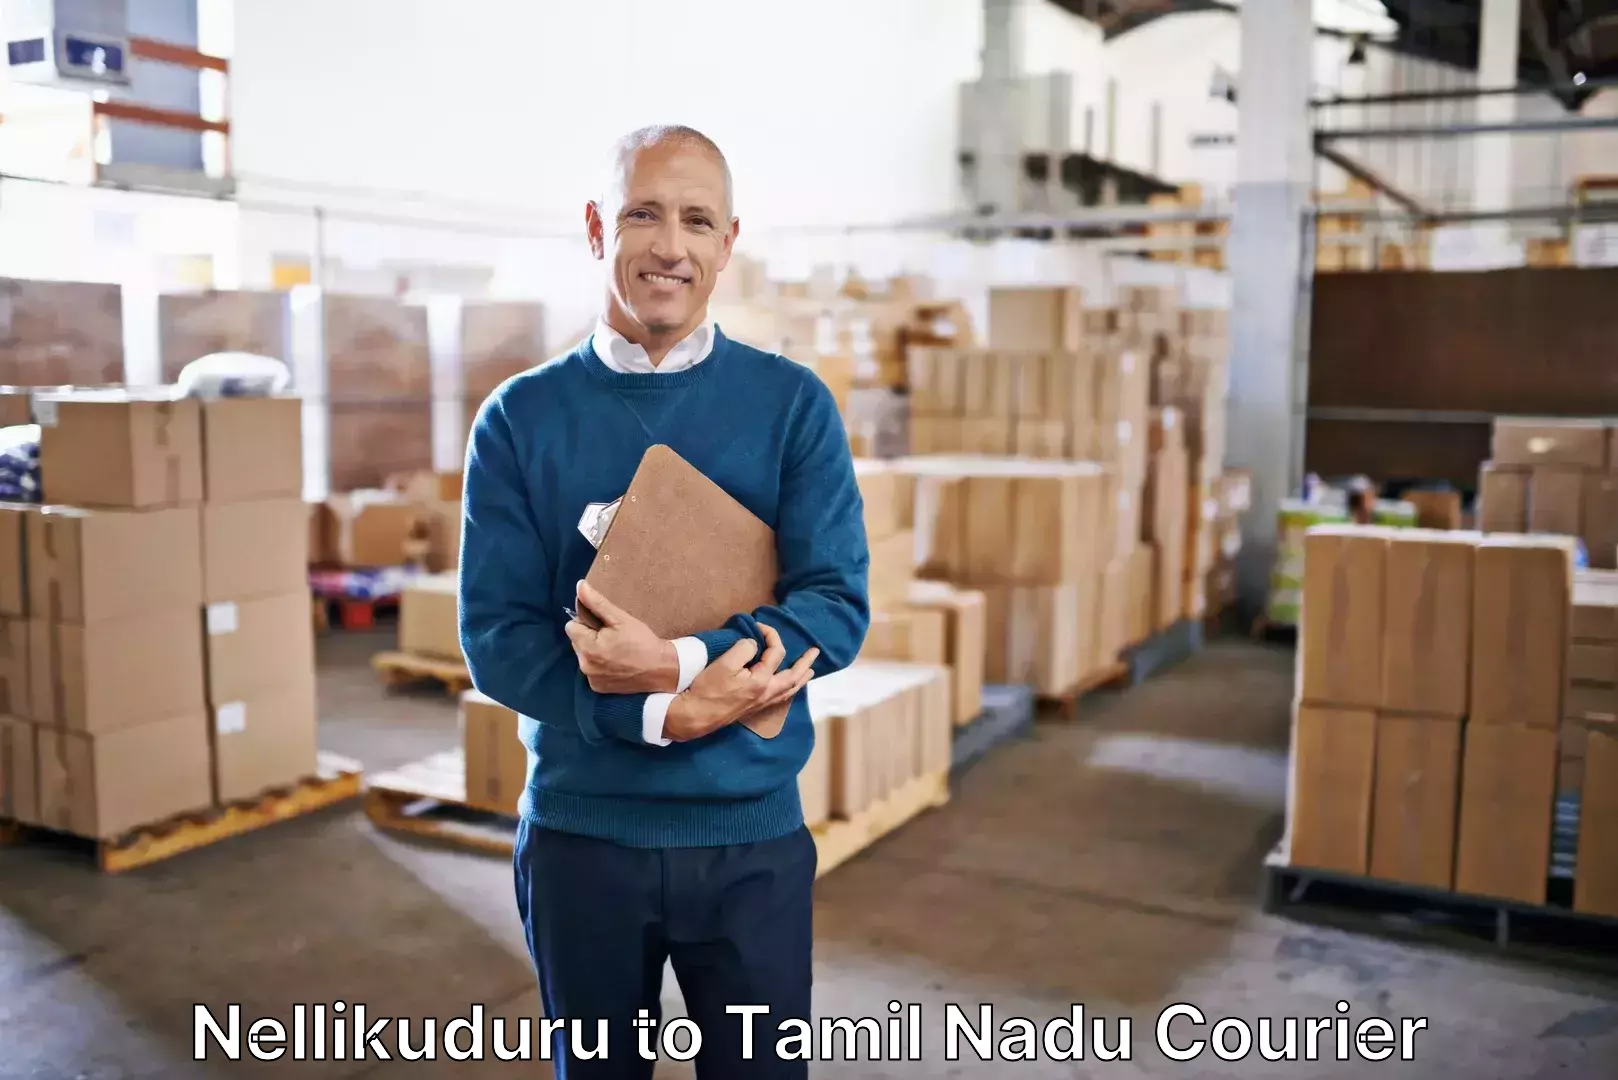 Baggage courier guide Nellikuduru to Cuddalore